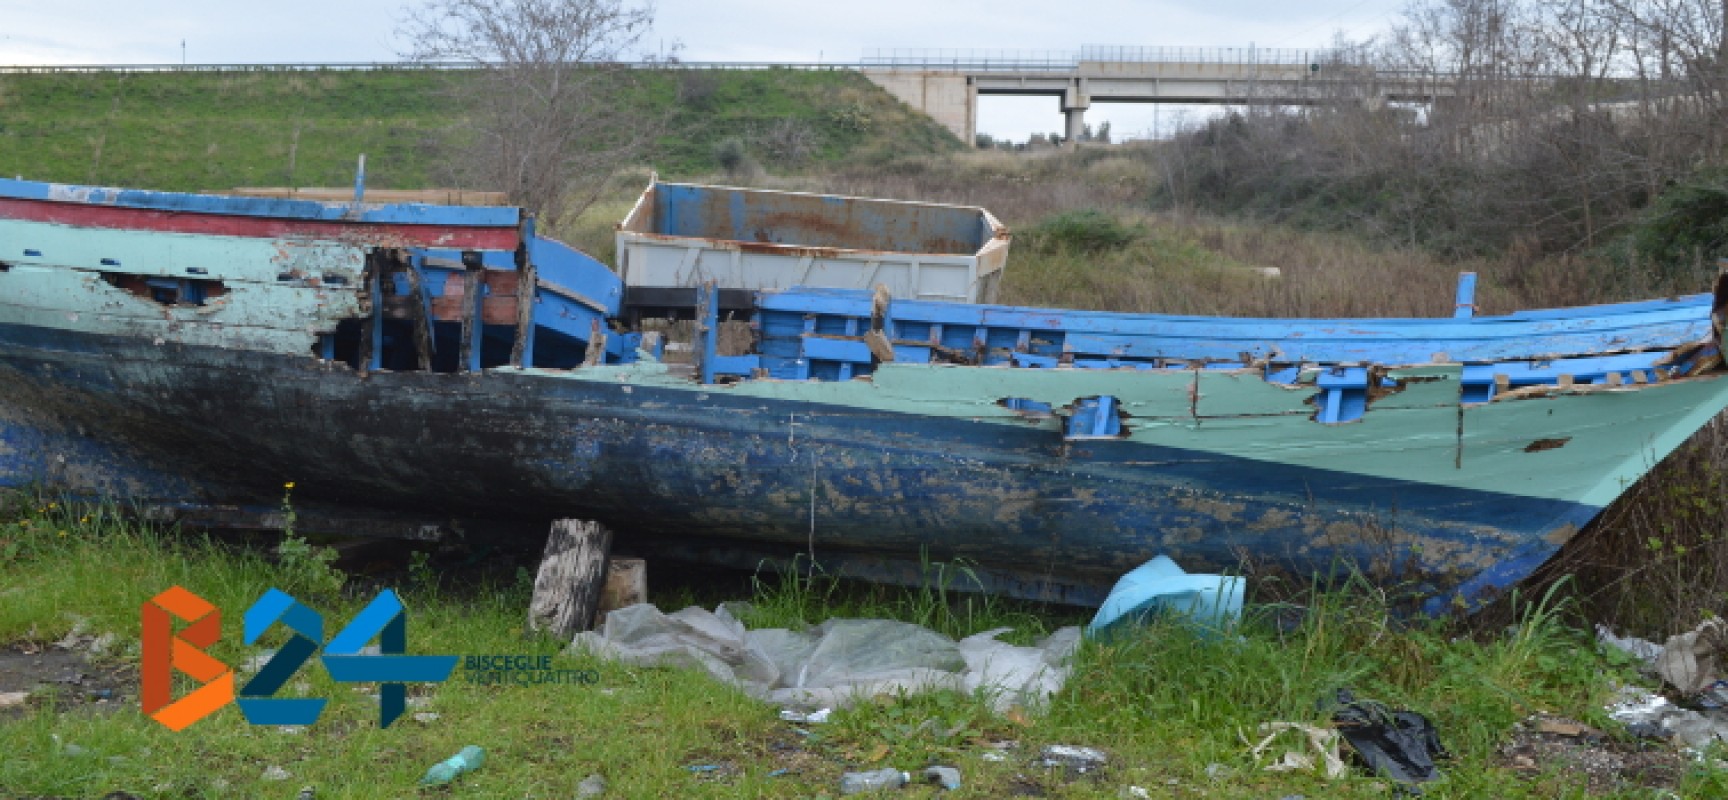 Barca da pesca abbandonata nella zona industriale di Bisceglie / FOTO